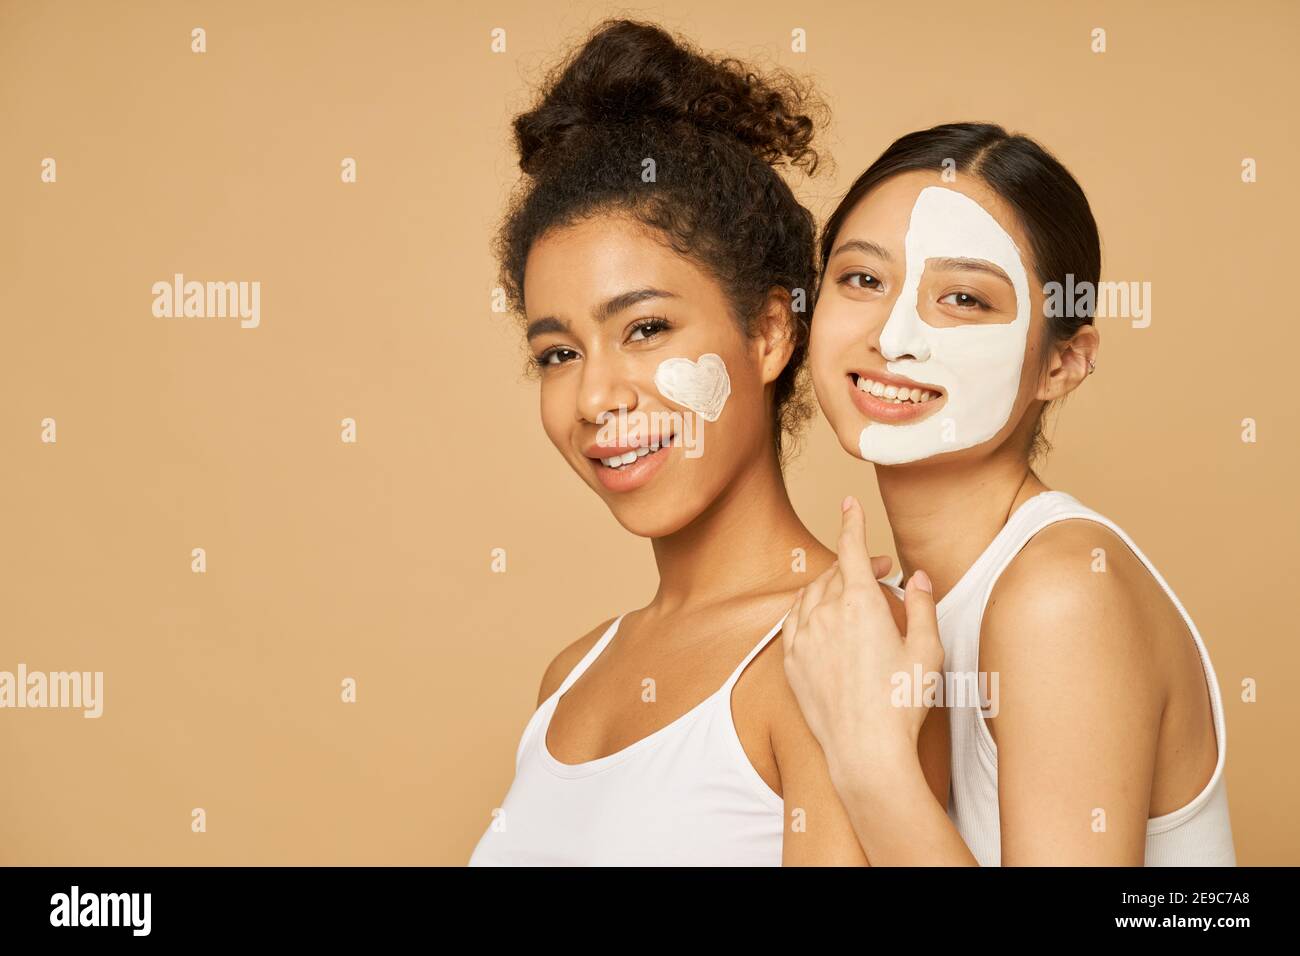 Zwei junge Freundinnen, die Spaß haben, lächeln an der Kamera, während sie mit Gesichtsmasken auf isoliertem beigefarbenem Hintergrund posieren. Hautpflege, Beauty-Konzept Stockfoto